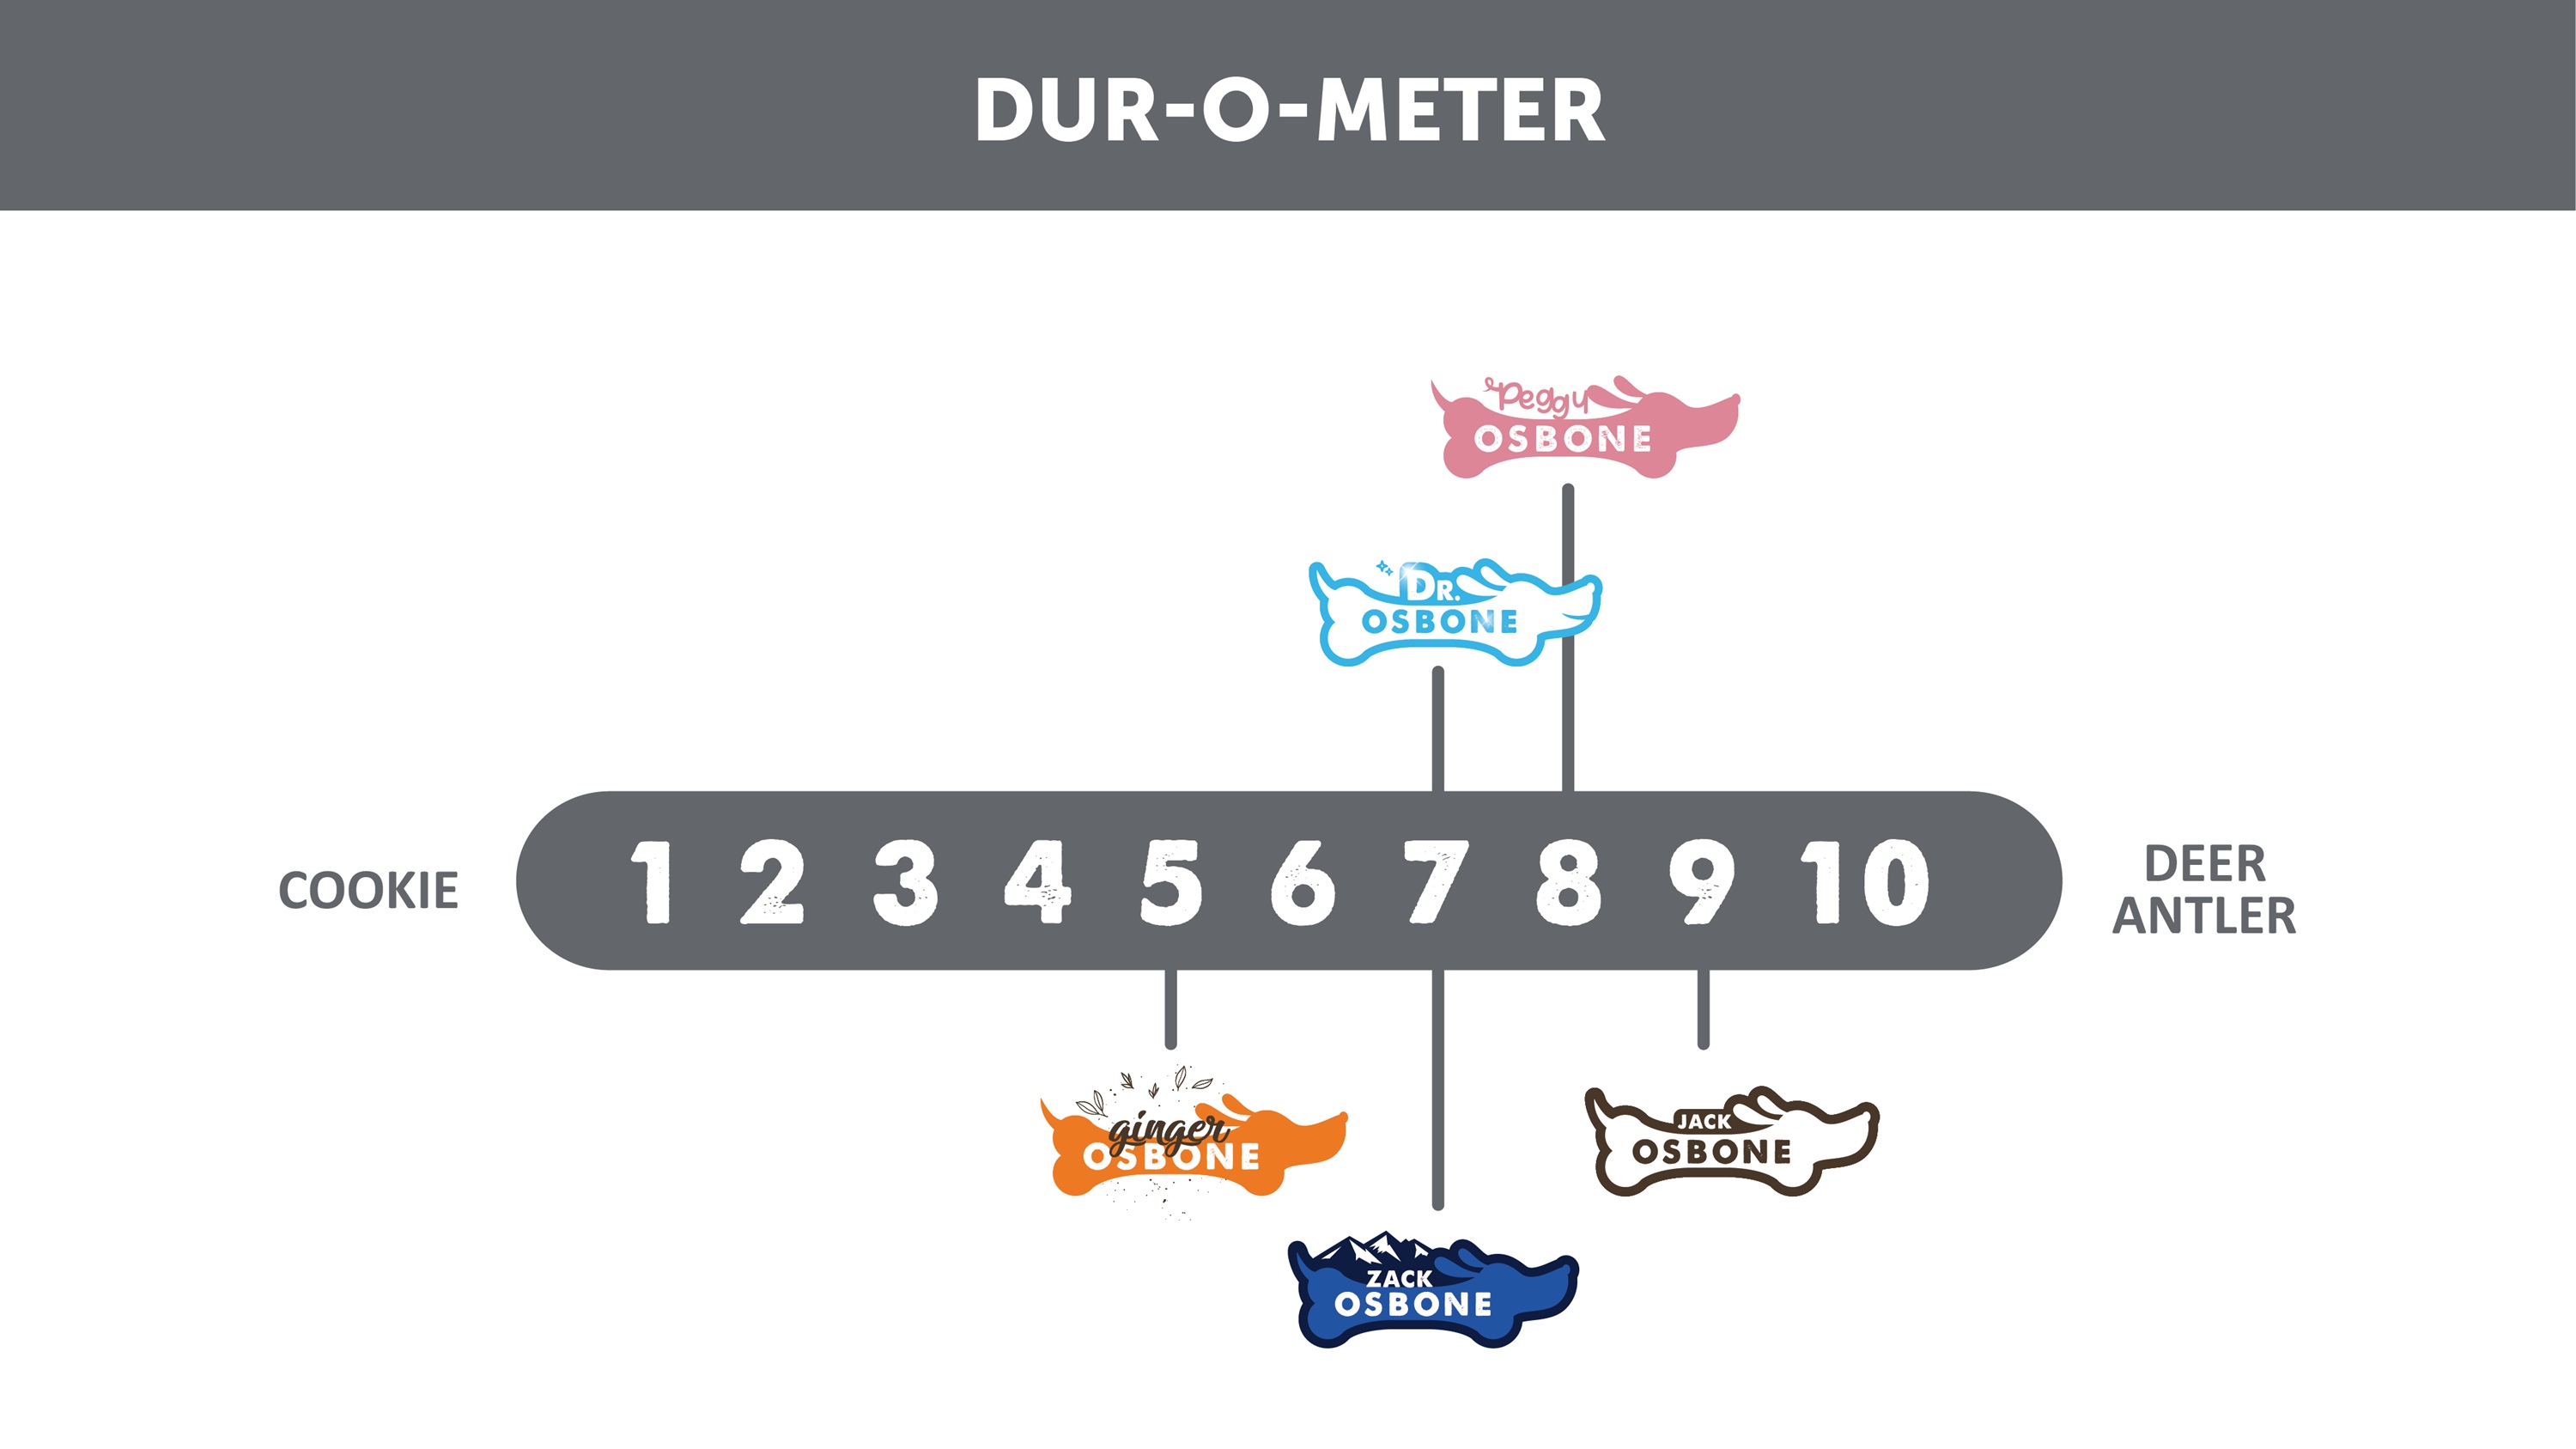 Osbone Family Durometer